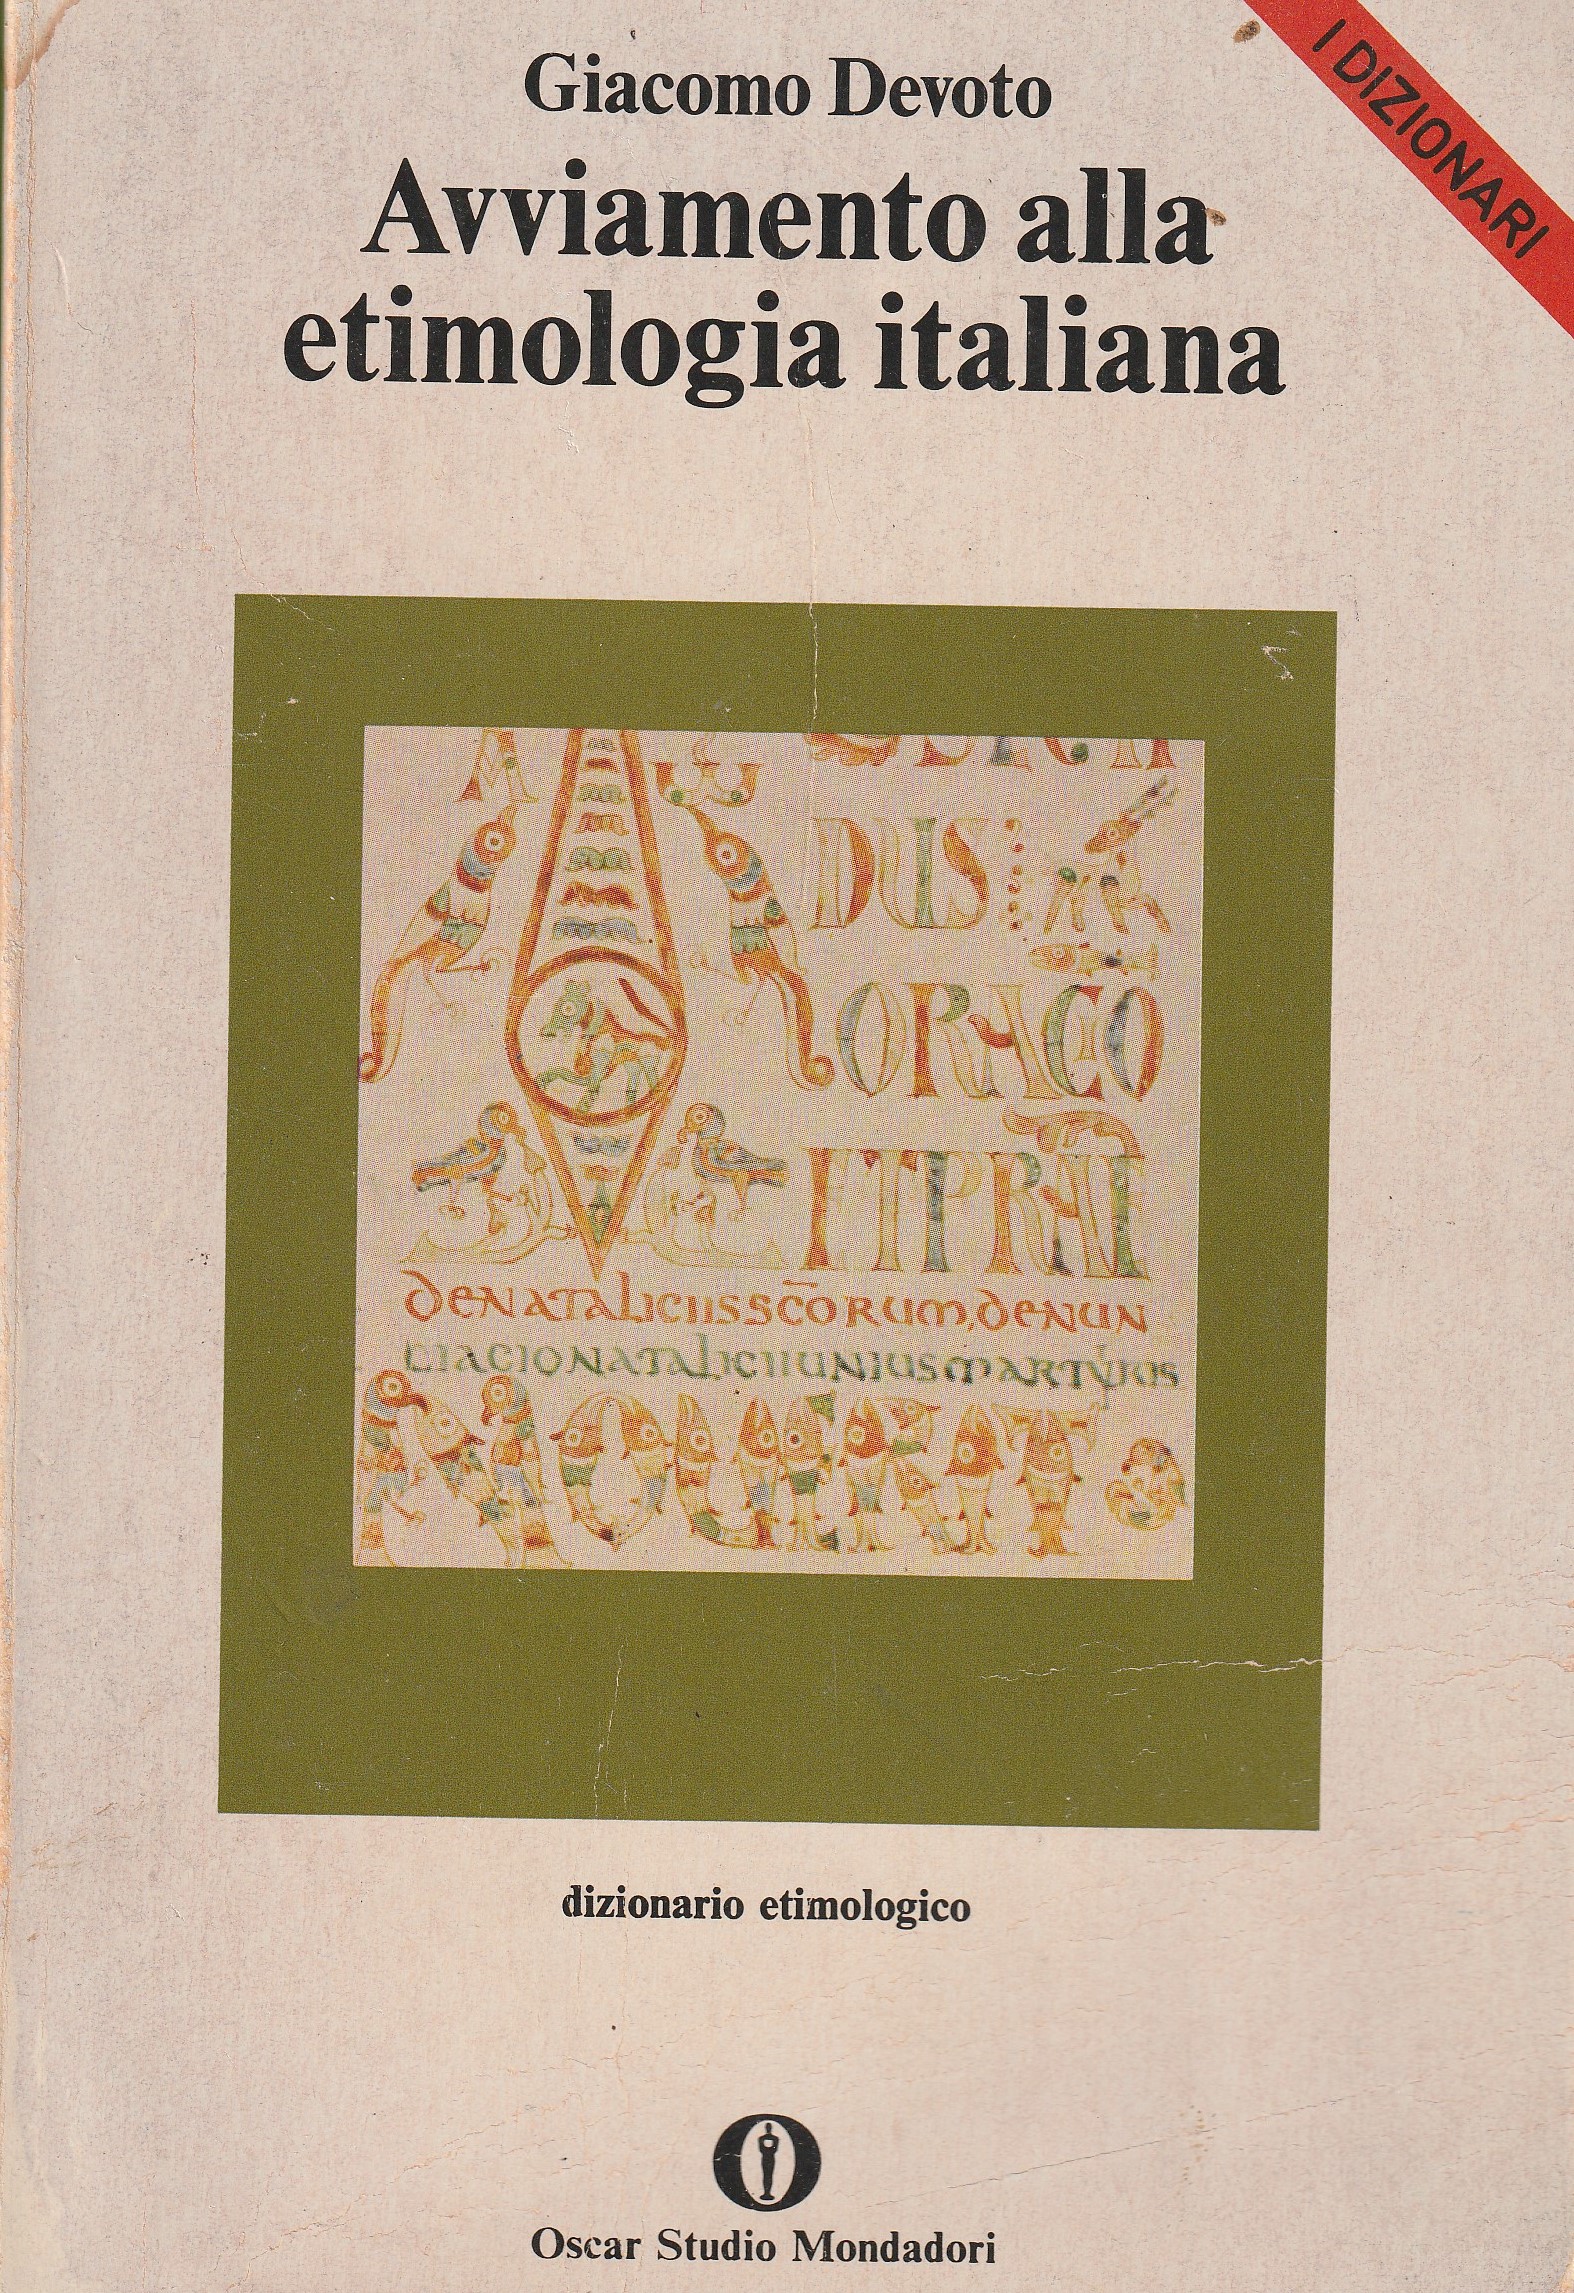 Giacomo Devoto: AVVIAMENTO ALLA ETIMOLOGIA ITALIANA. Dizionario etimologico.  – Biblioteca Liceo Gullace Talotta